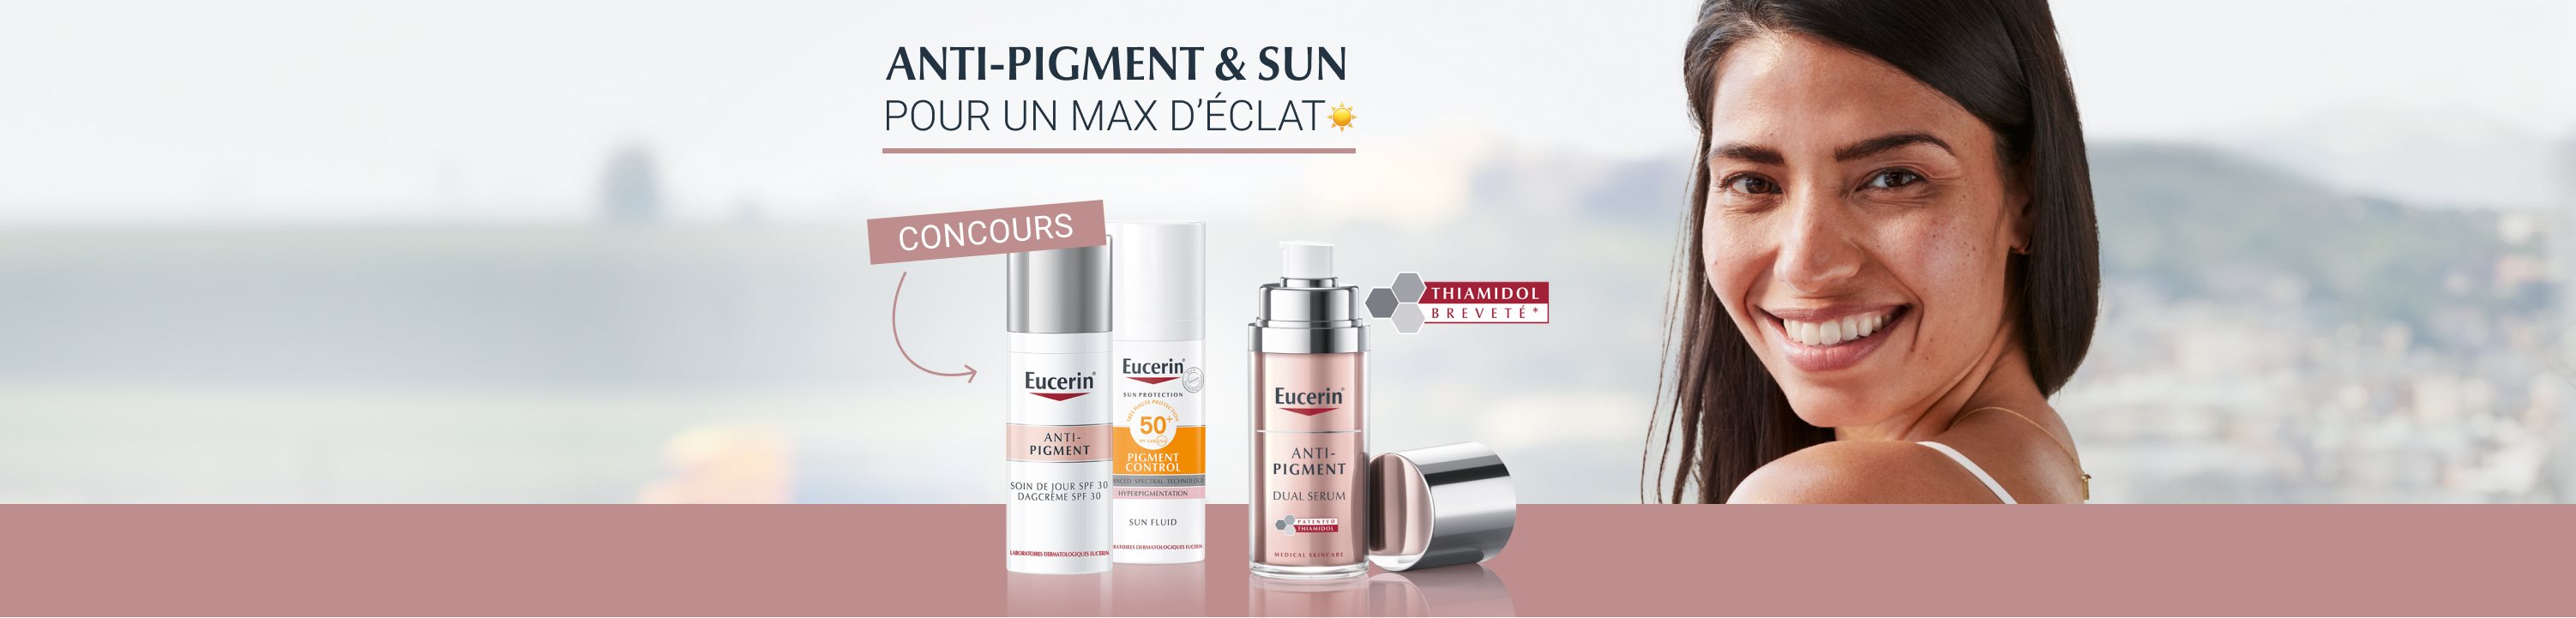 eucerin anti-pigment & sun concours